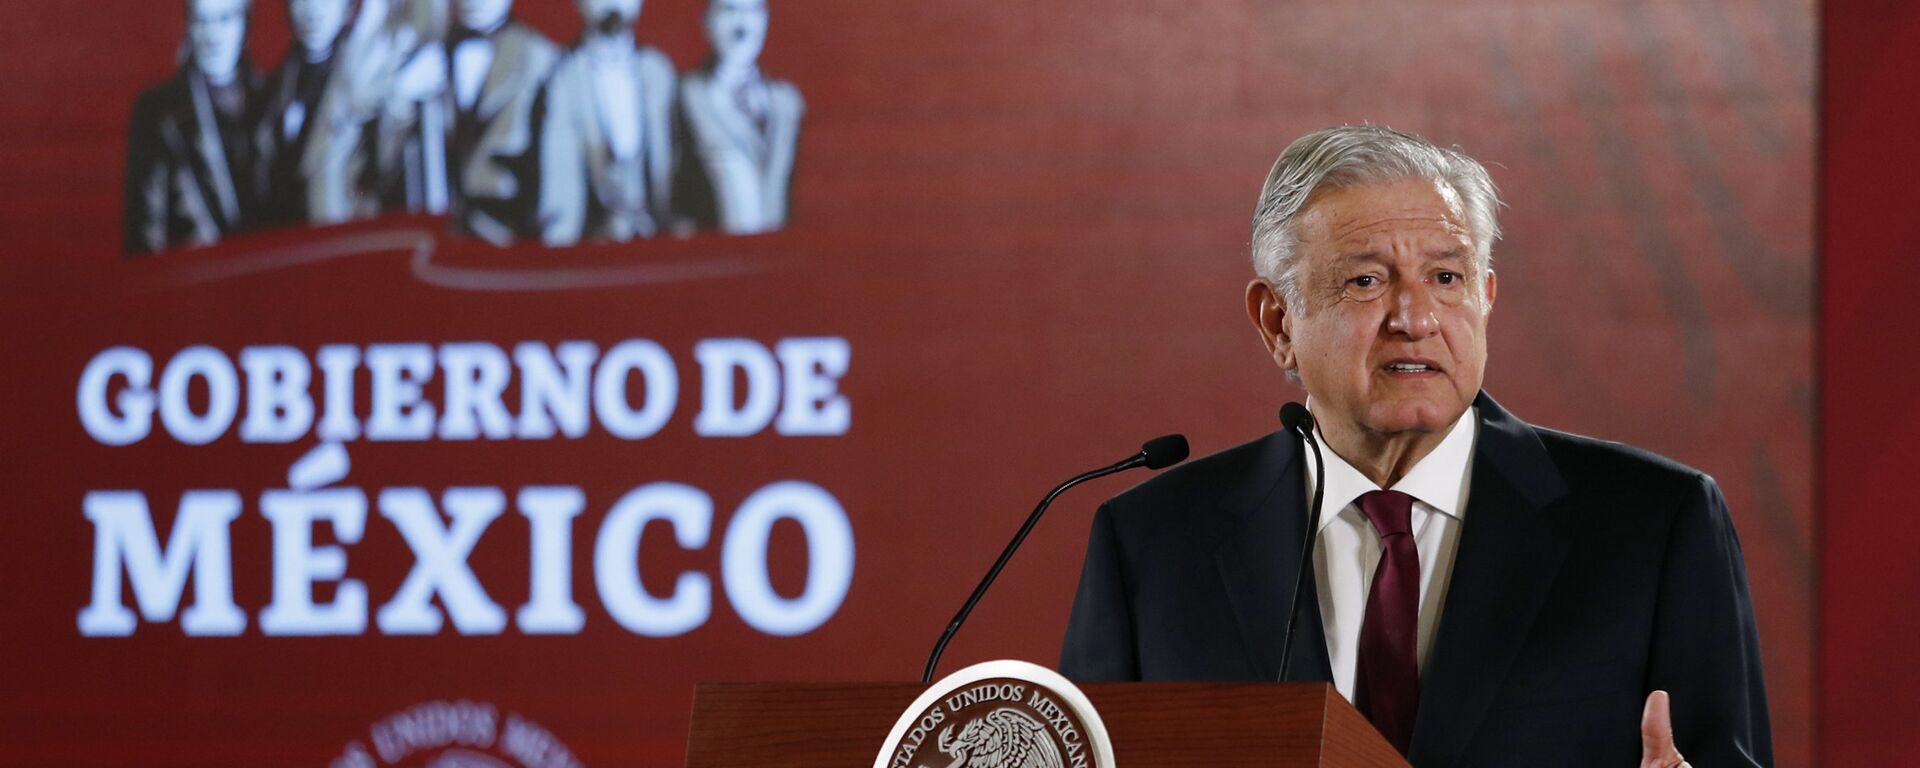 Andrés Manuel López Obrador, presidente de México - Sputnik Mundo, 1920, 21.06.2021